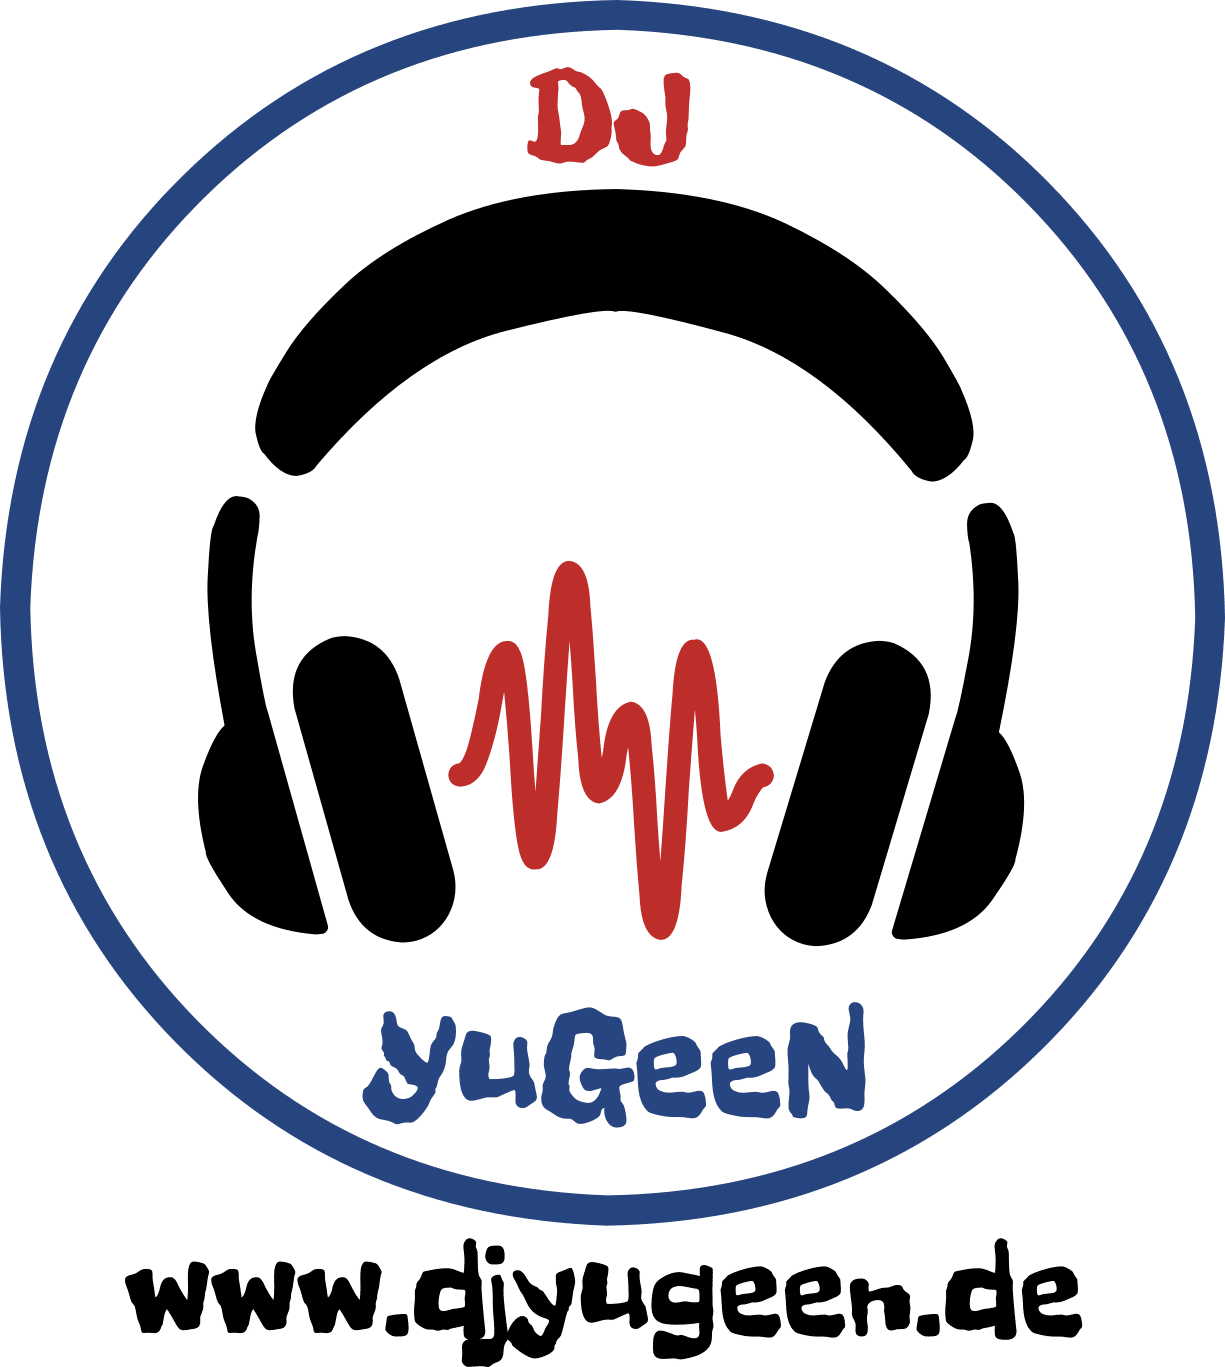 deutsch russischer DJ, DJ Eugen, DJ Yugeen, DJ Osnabrück